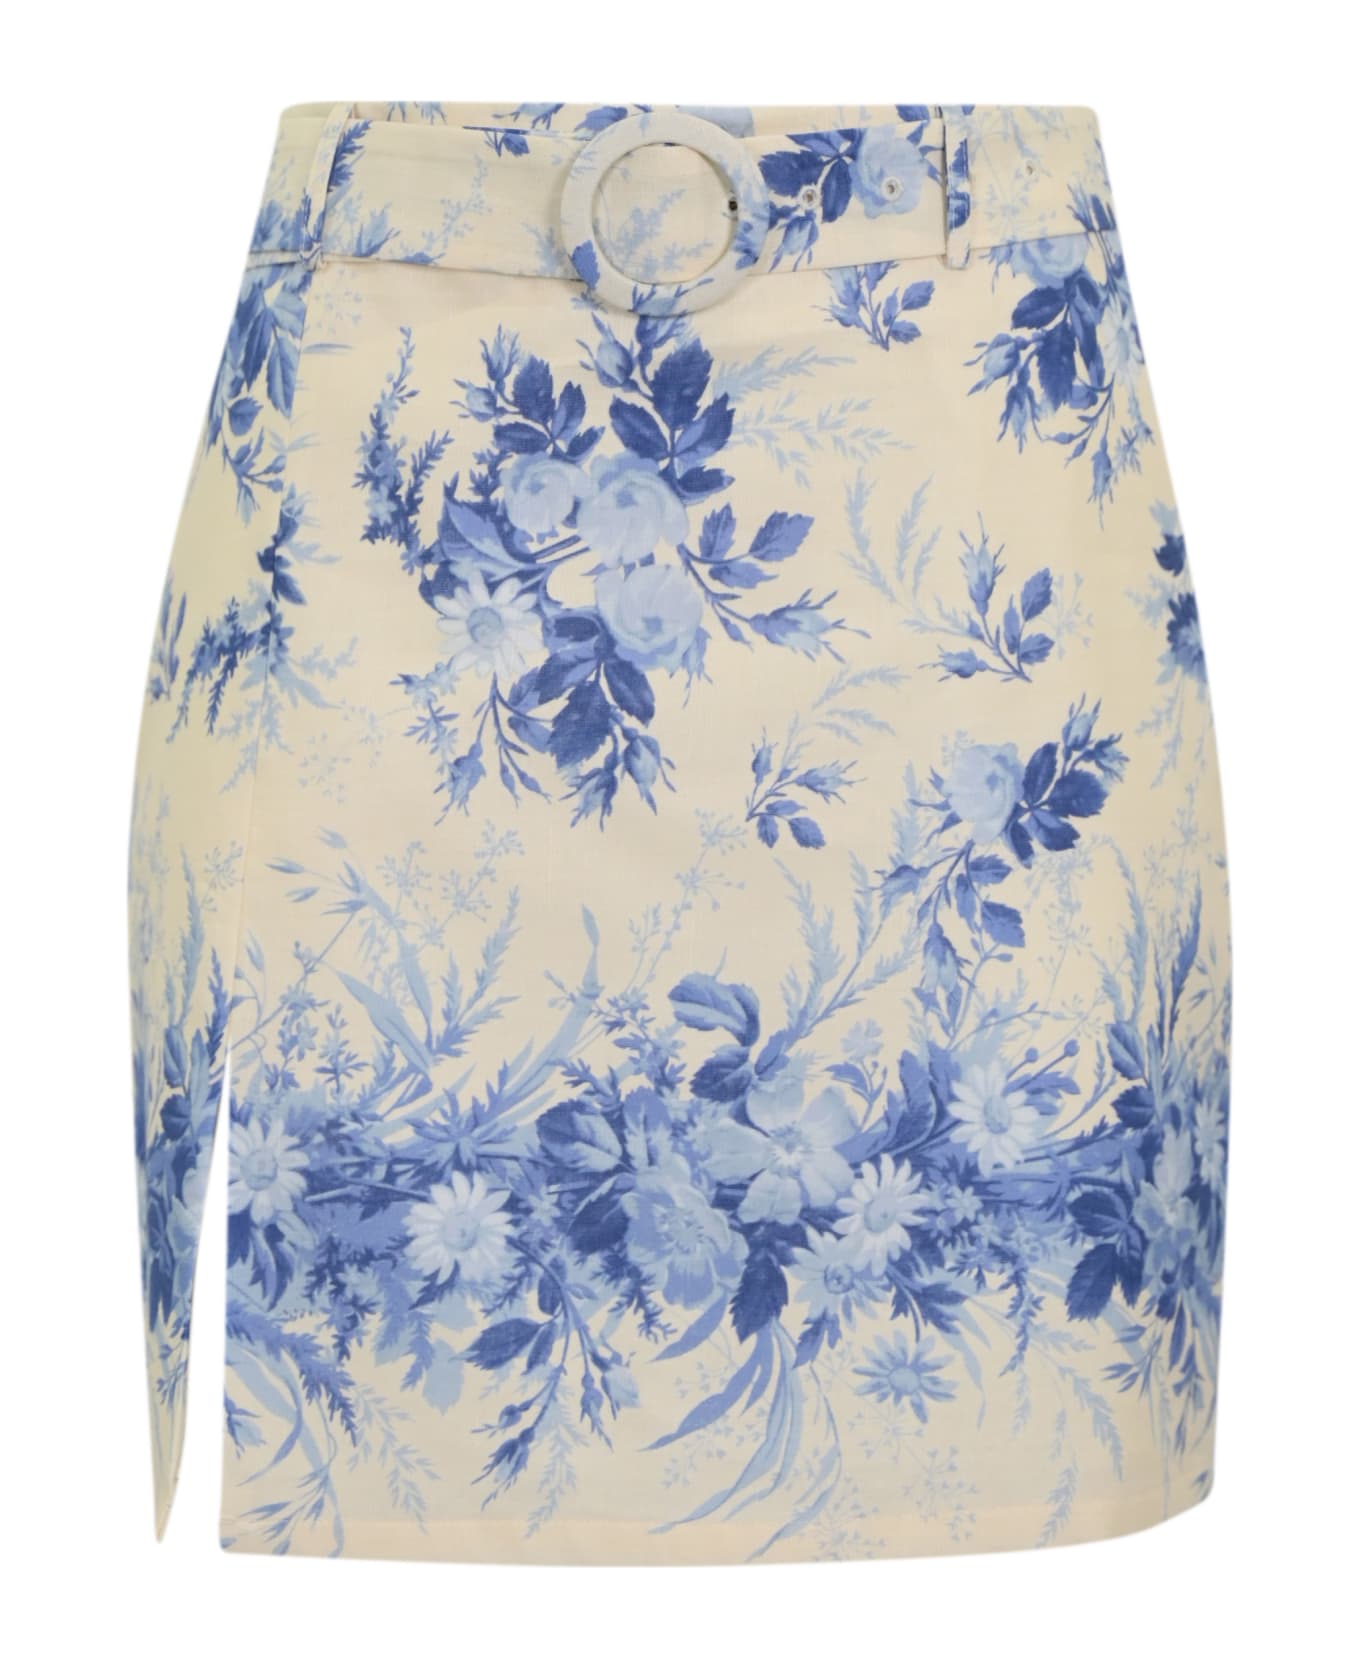 TwinSet Linen Skirt With Print - NEUTRALS/BLUE スカート